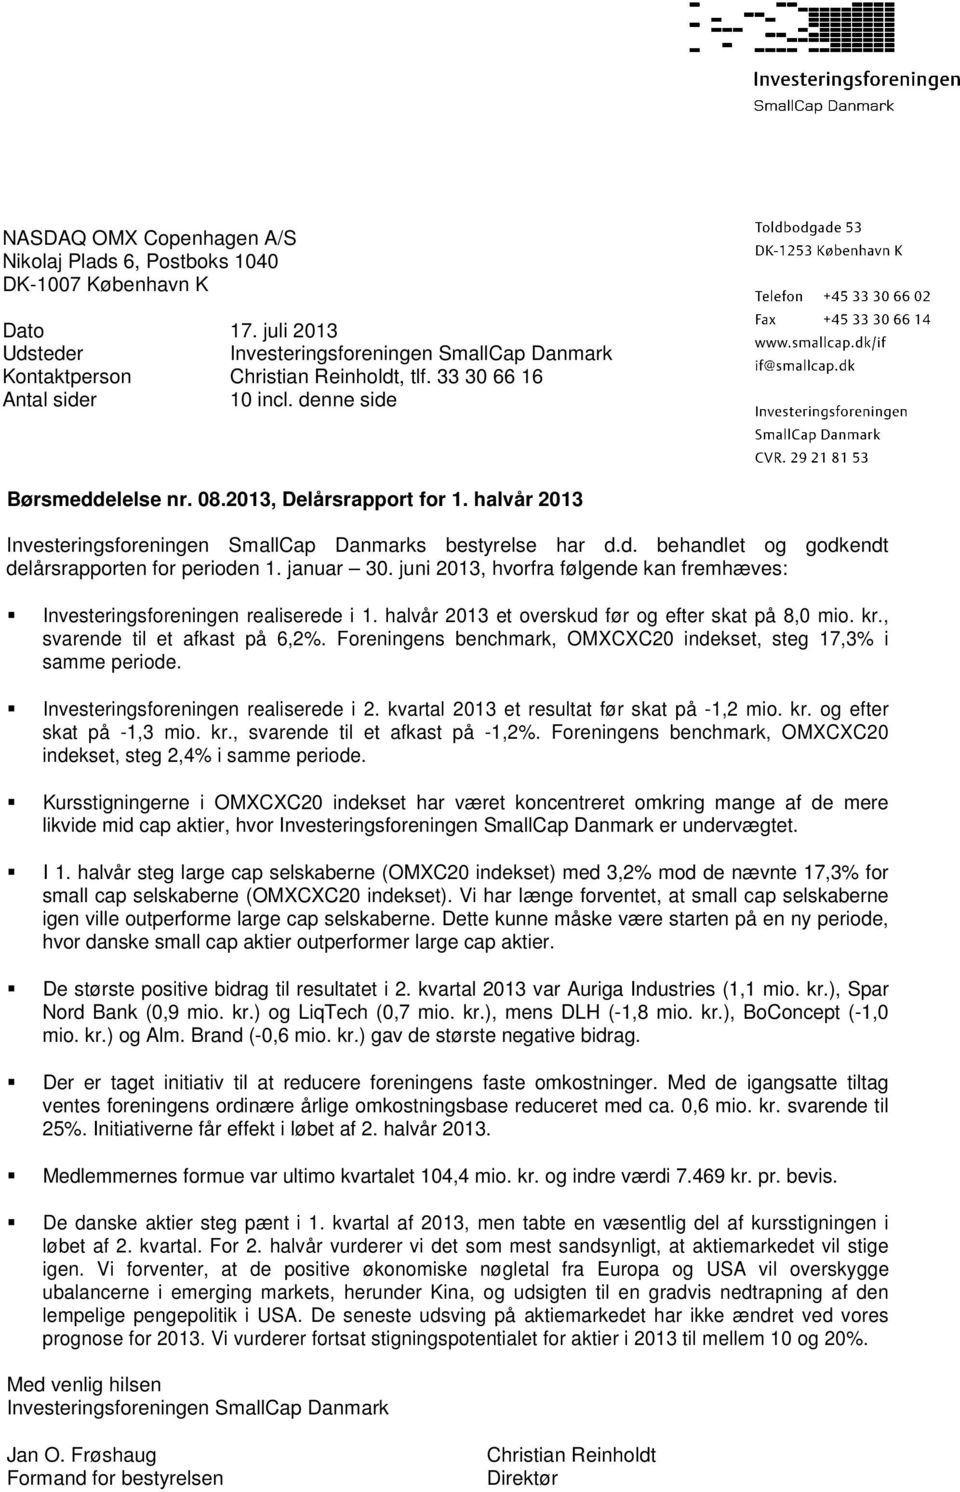 januar 30. juni 2013, hvorfra følgende kan fremhæves: Investeringsforeningen realiserede i 1. halvår 2013 et overskud før og efter skat på 8,0 mio. kr., svarende til et afkast på 6,2%.